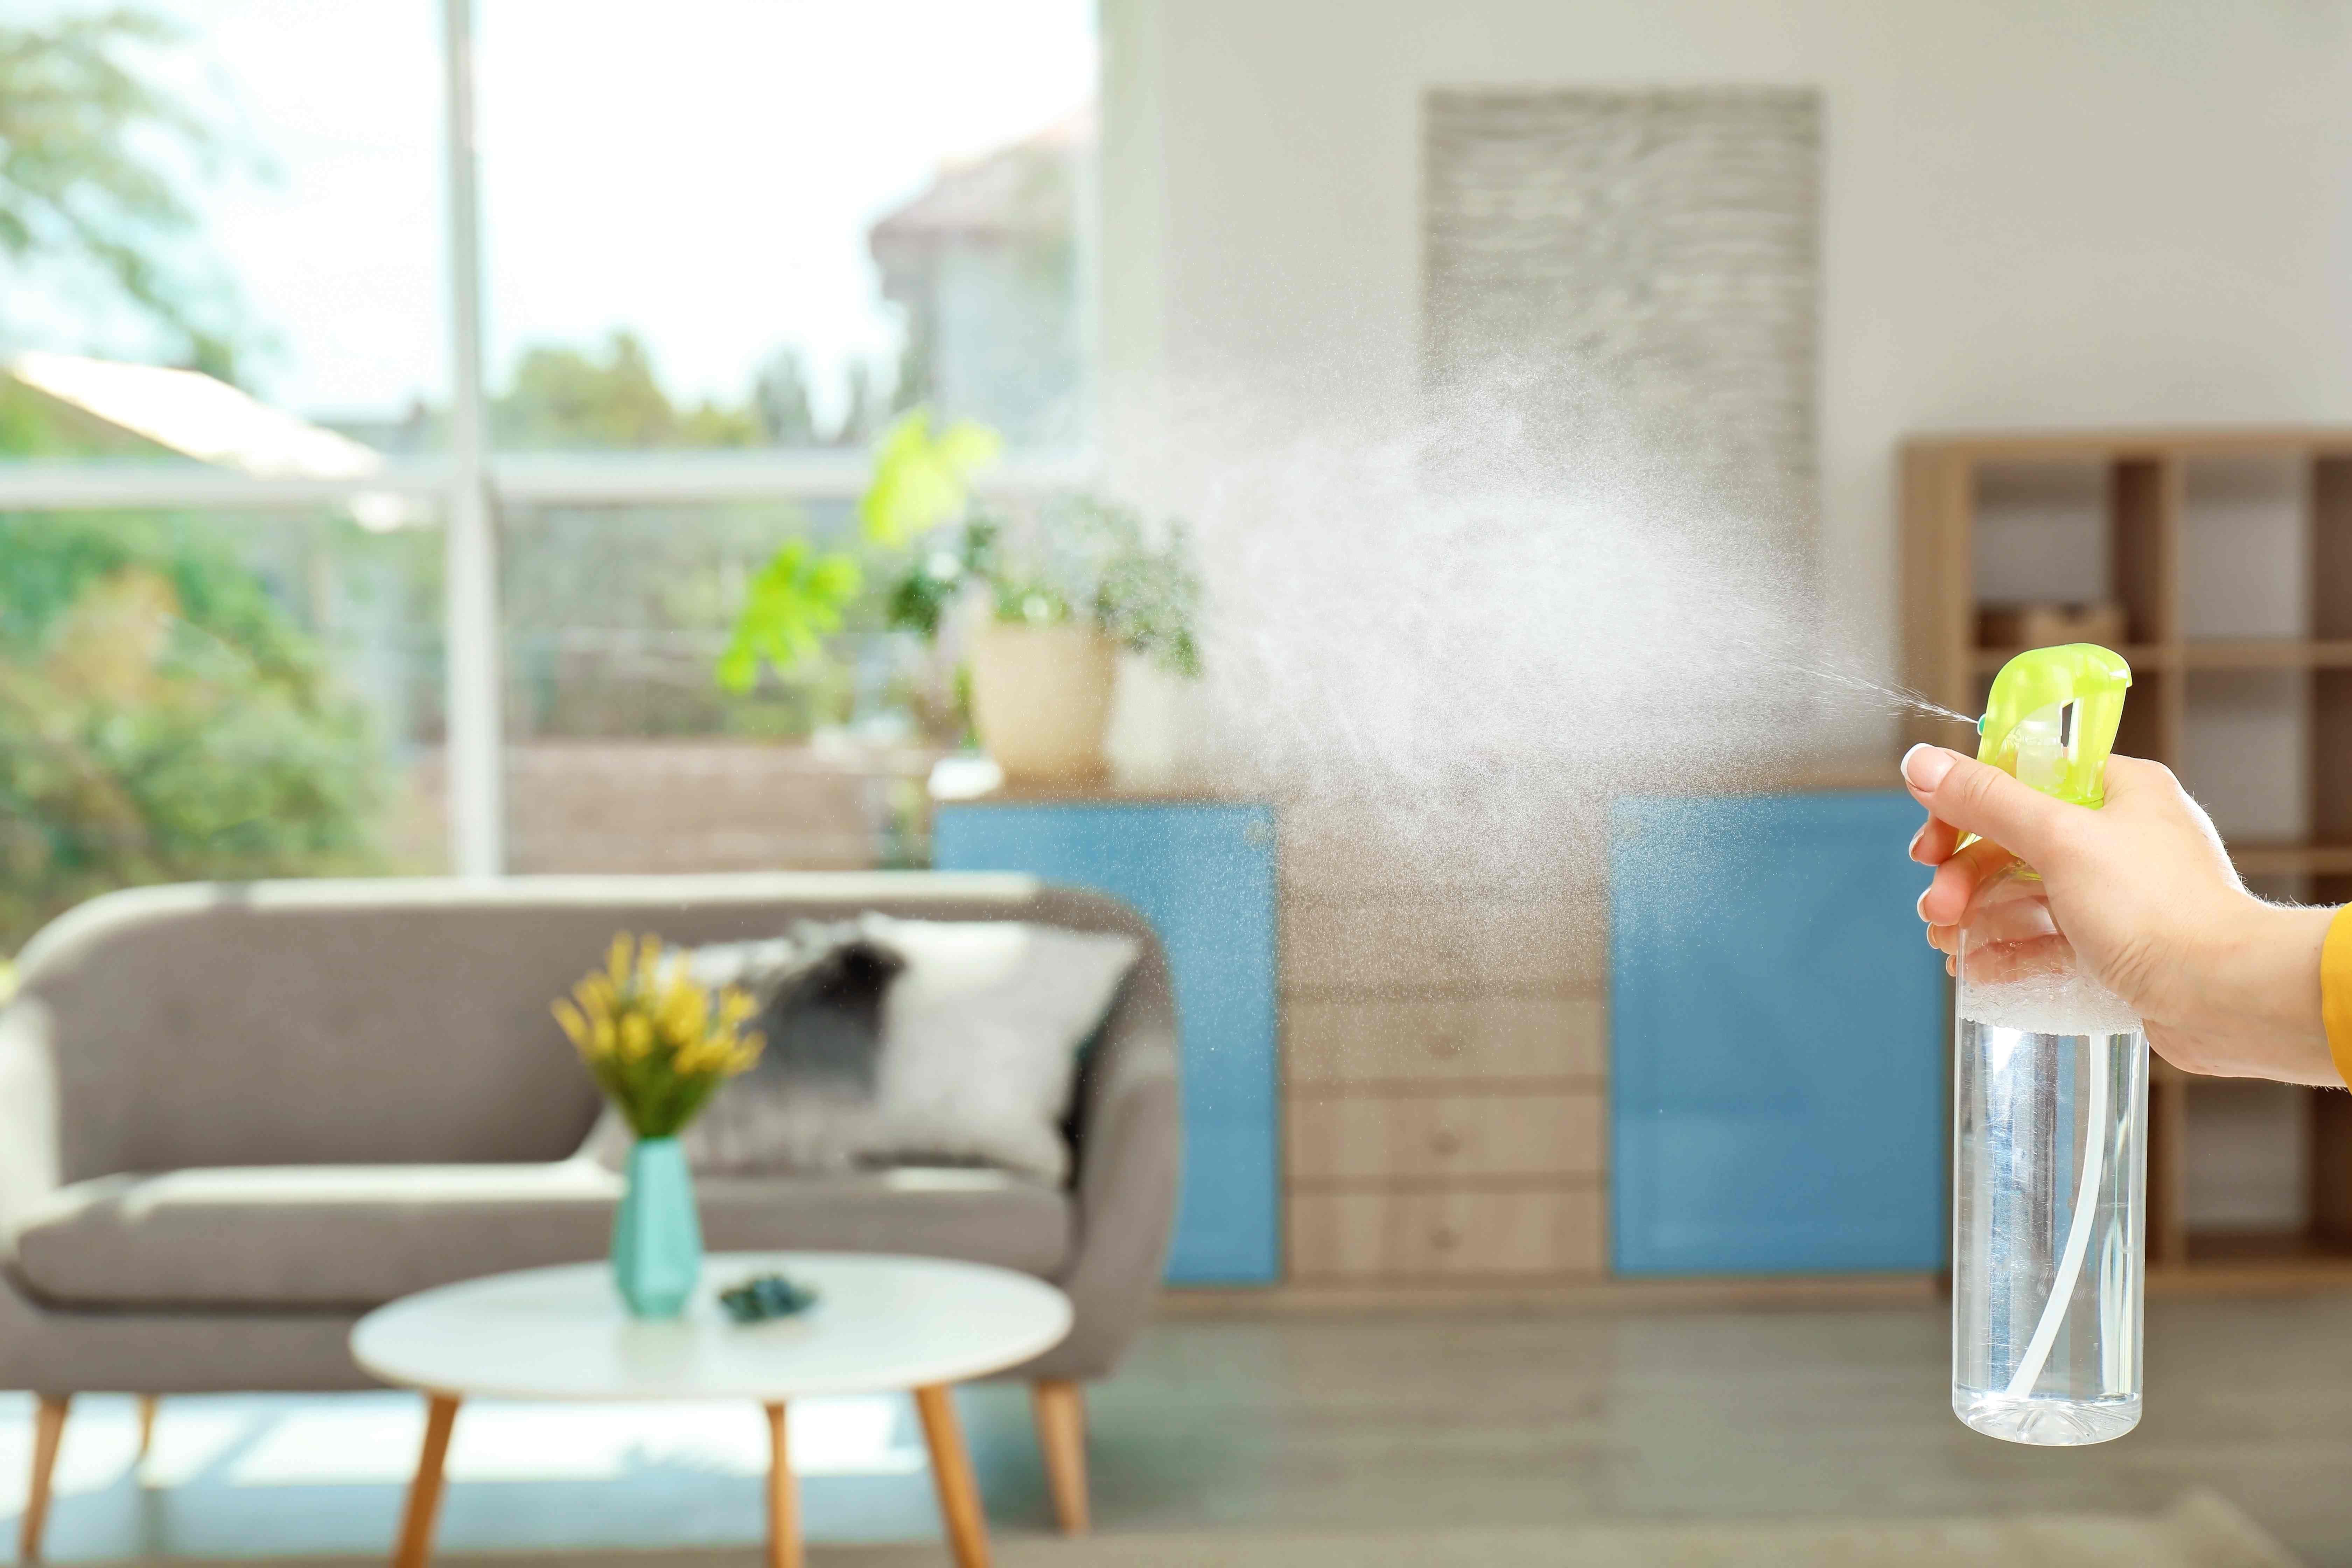 Pots-pourris maison : parfumez naturellement votre intérieur !